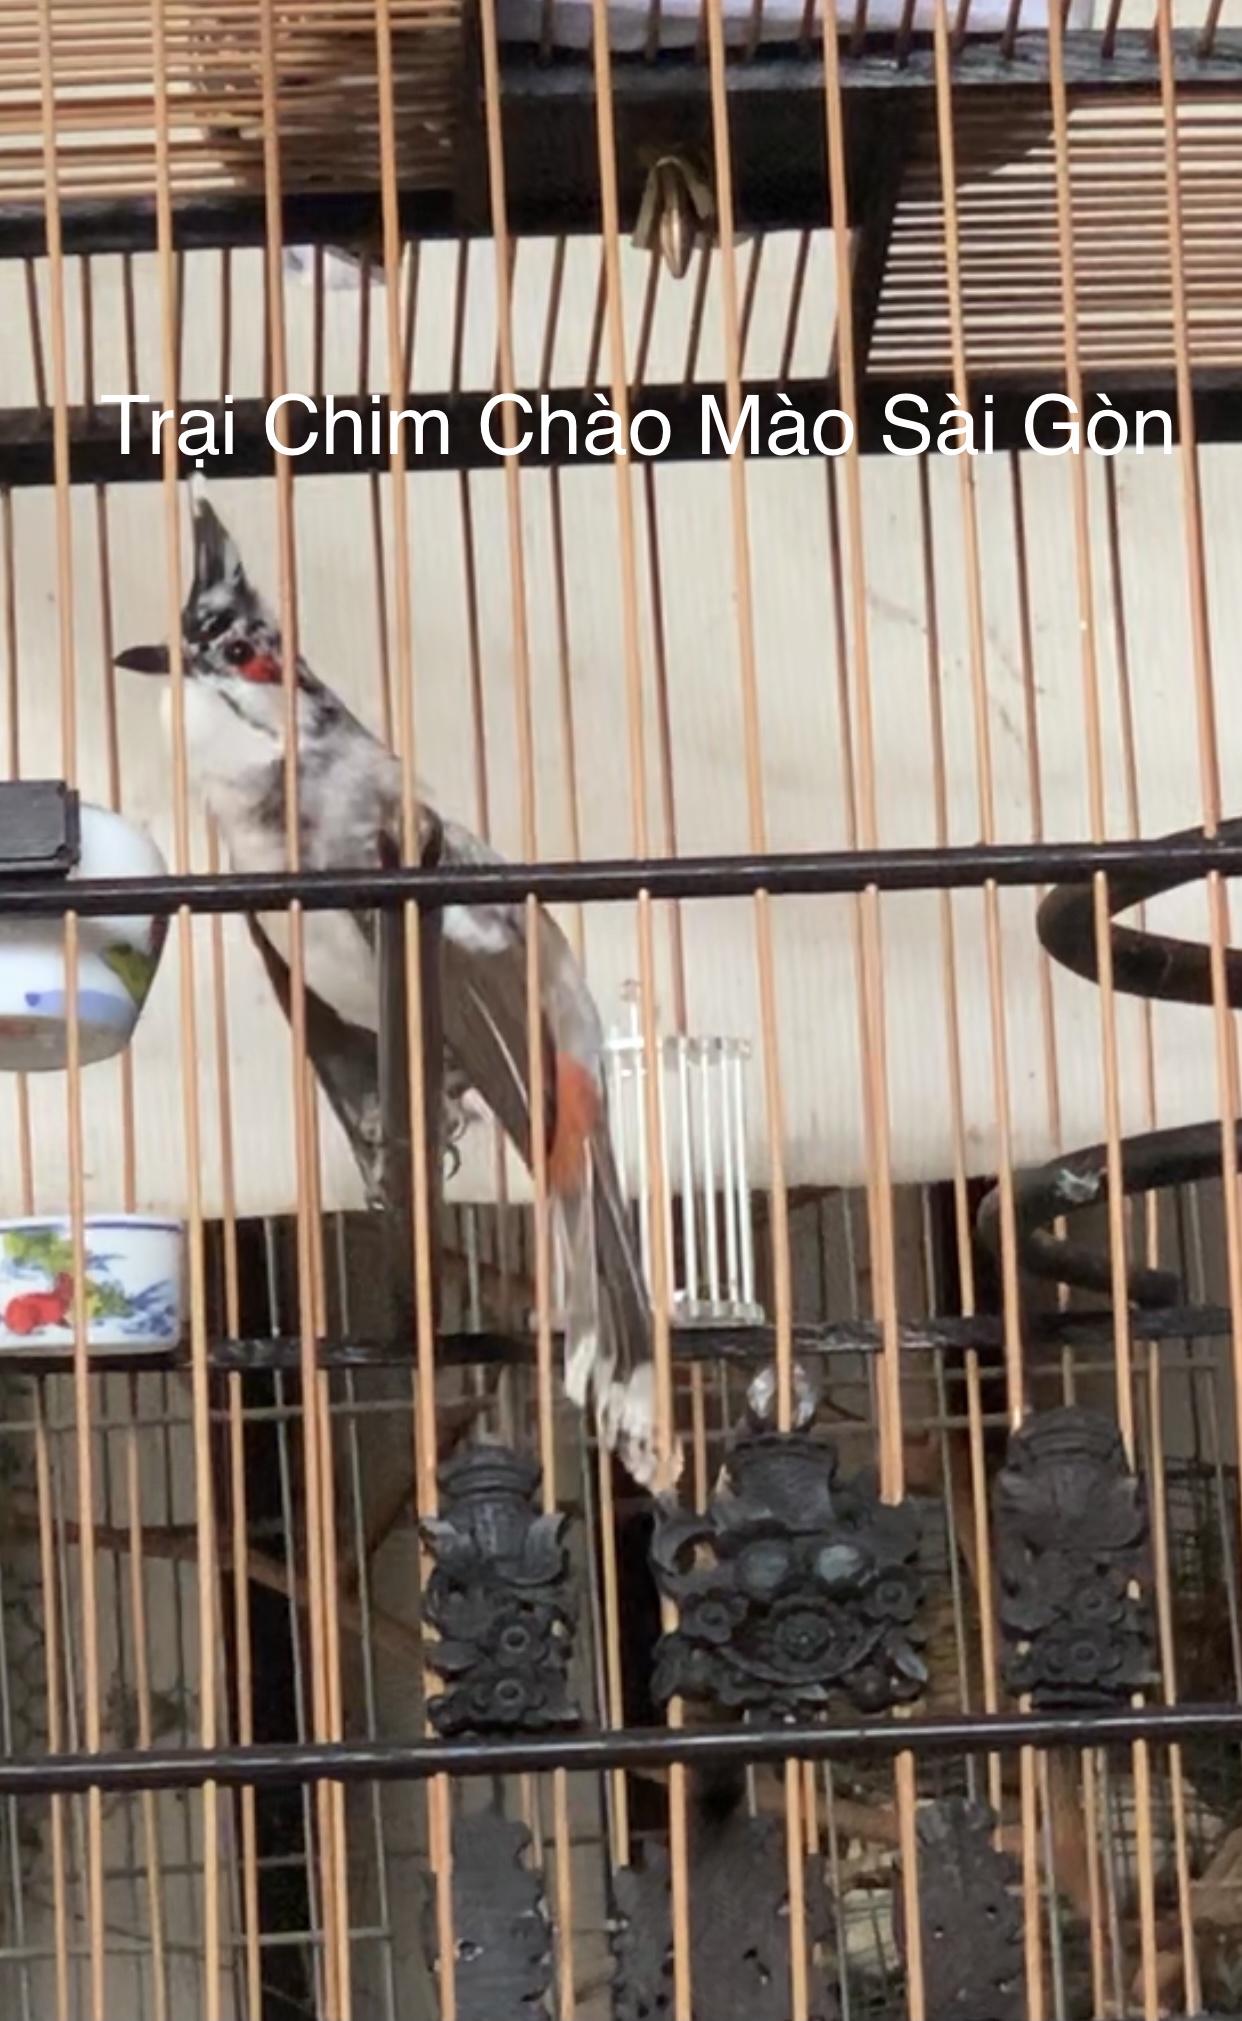 Chào Mào Bổi: Bổi bò - Trại Chim Chào Mào Sài Gòn